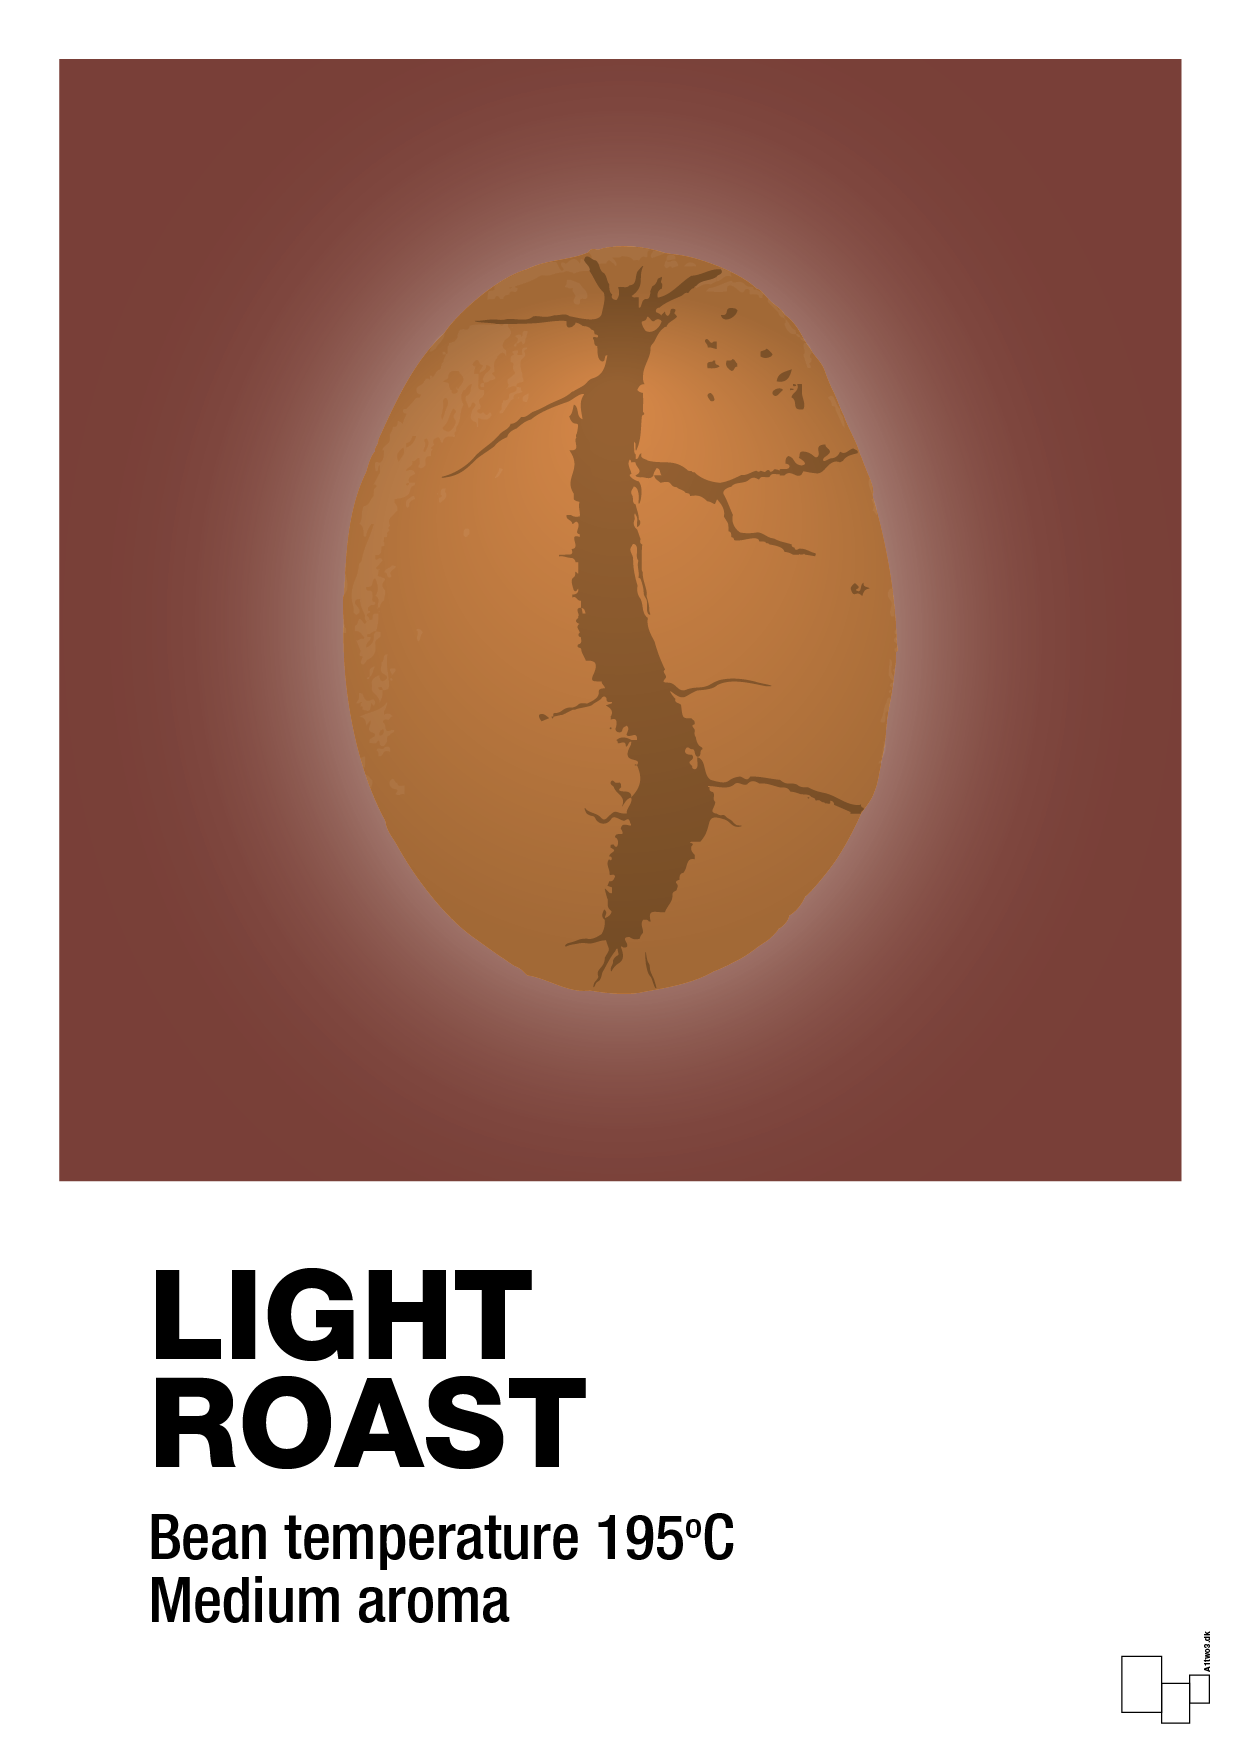 light roast - Plakat med Mad & Drikke i Red Pepper